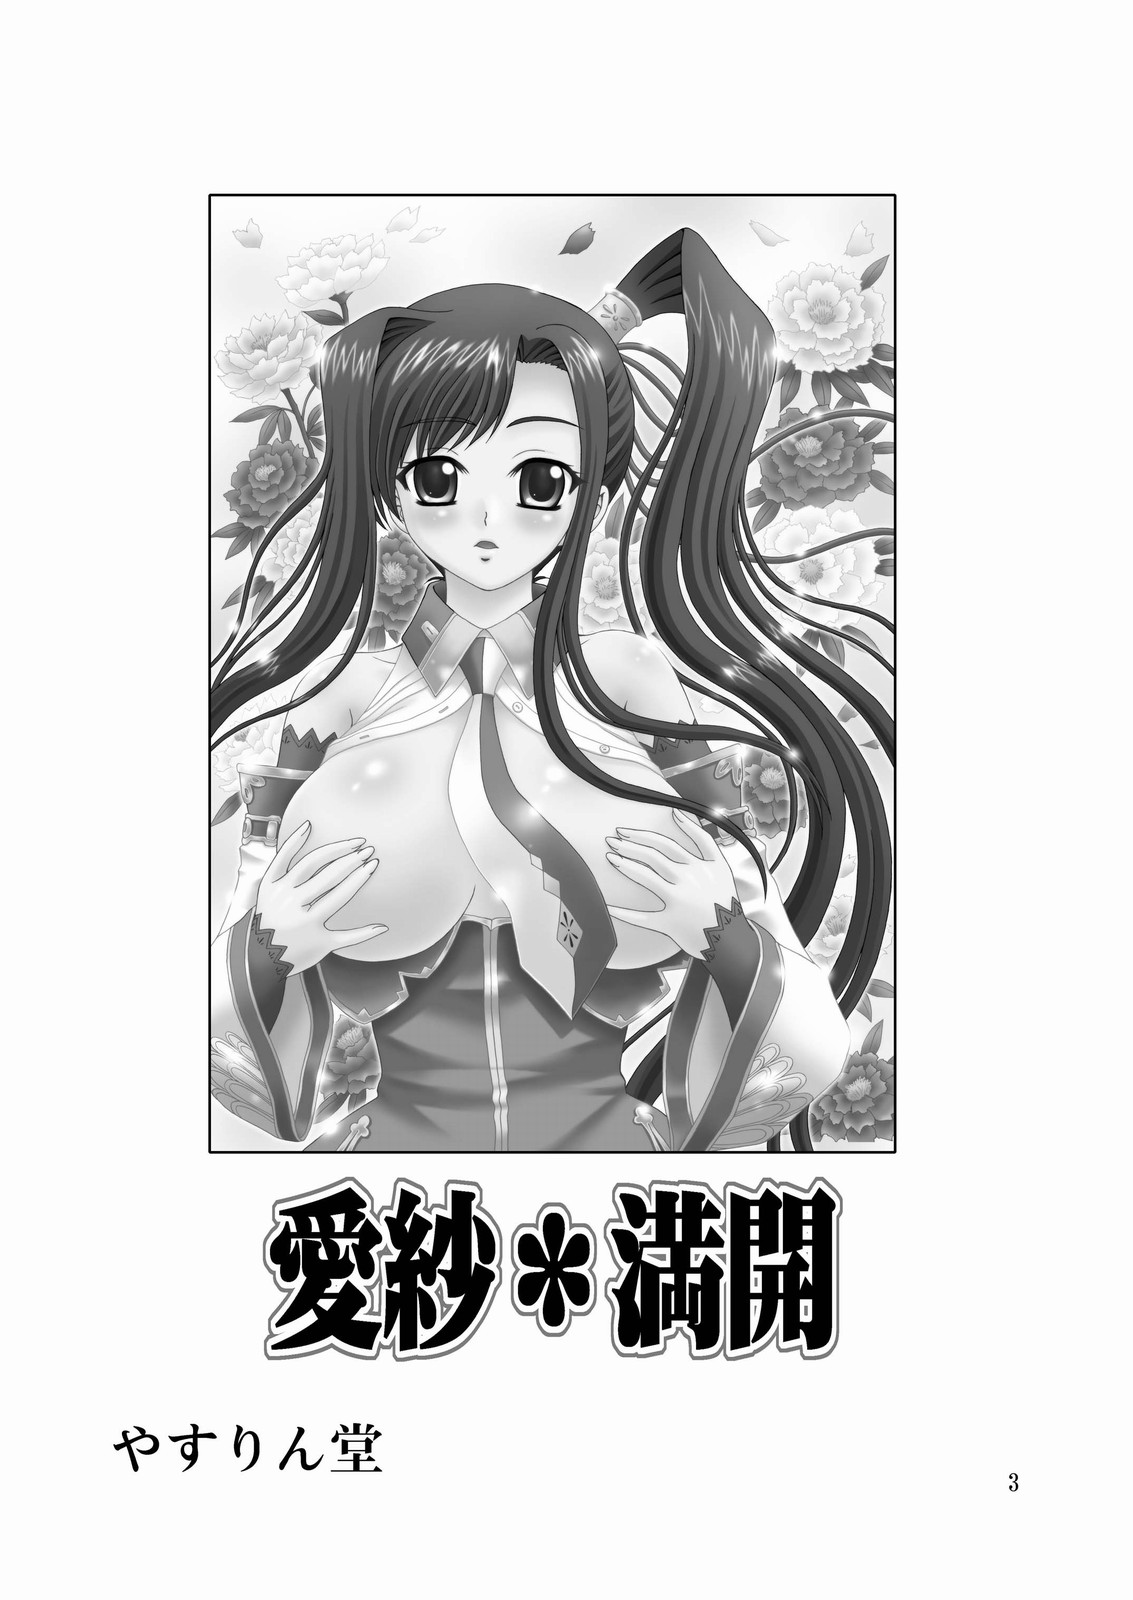 [Yasurin-do] Aisha Mankai (Shin Koihime Musou) (English) =Team Vanilla= [やすりん堂 (安麟太郎)]愛紗*満開(真・恋姫&dagger;無双) [英訳]